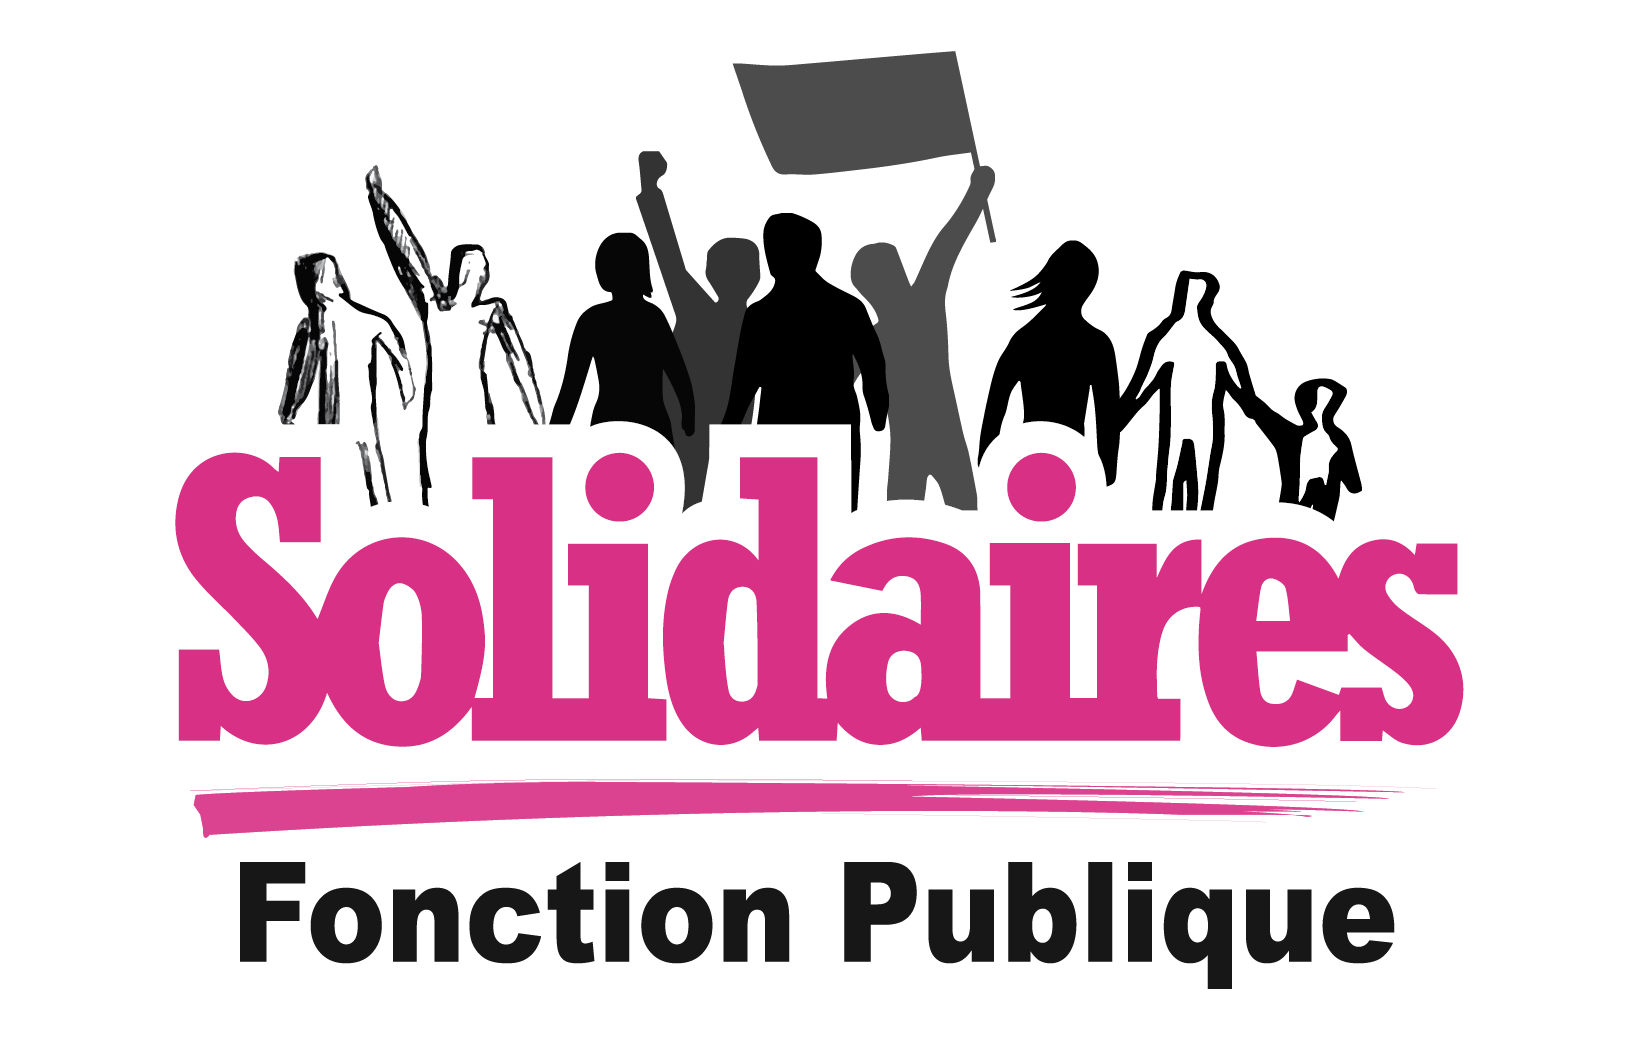 Solidaires Fonction publique